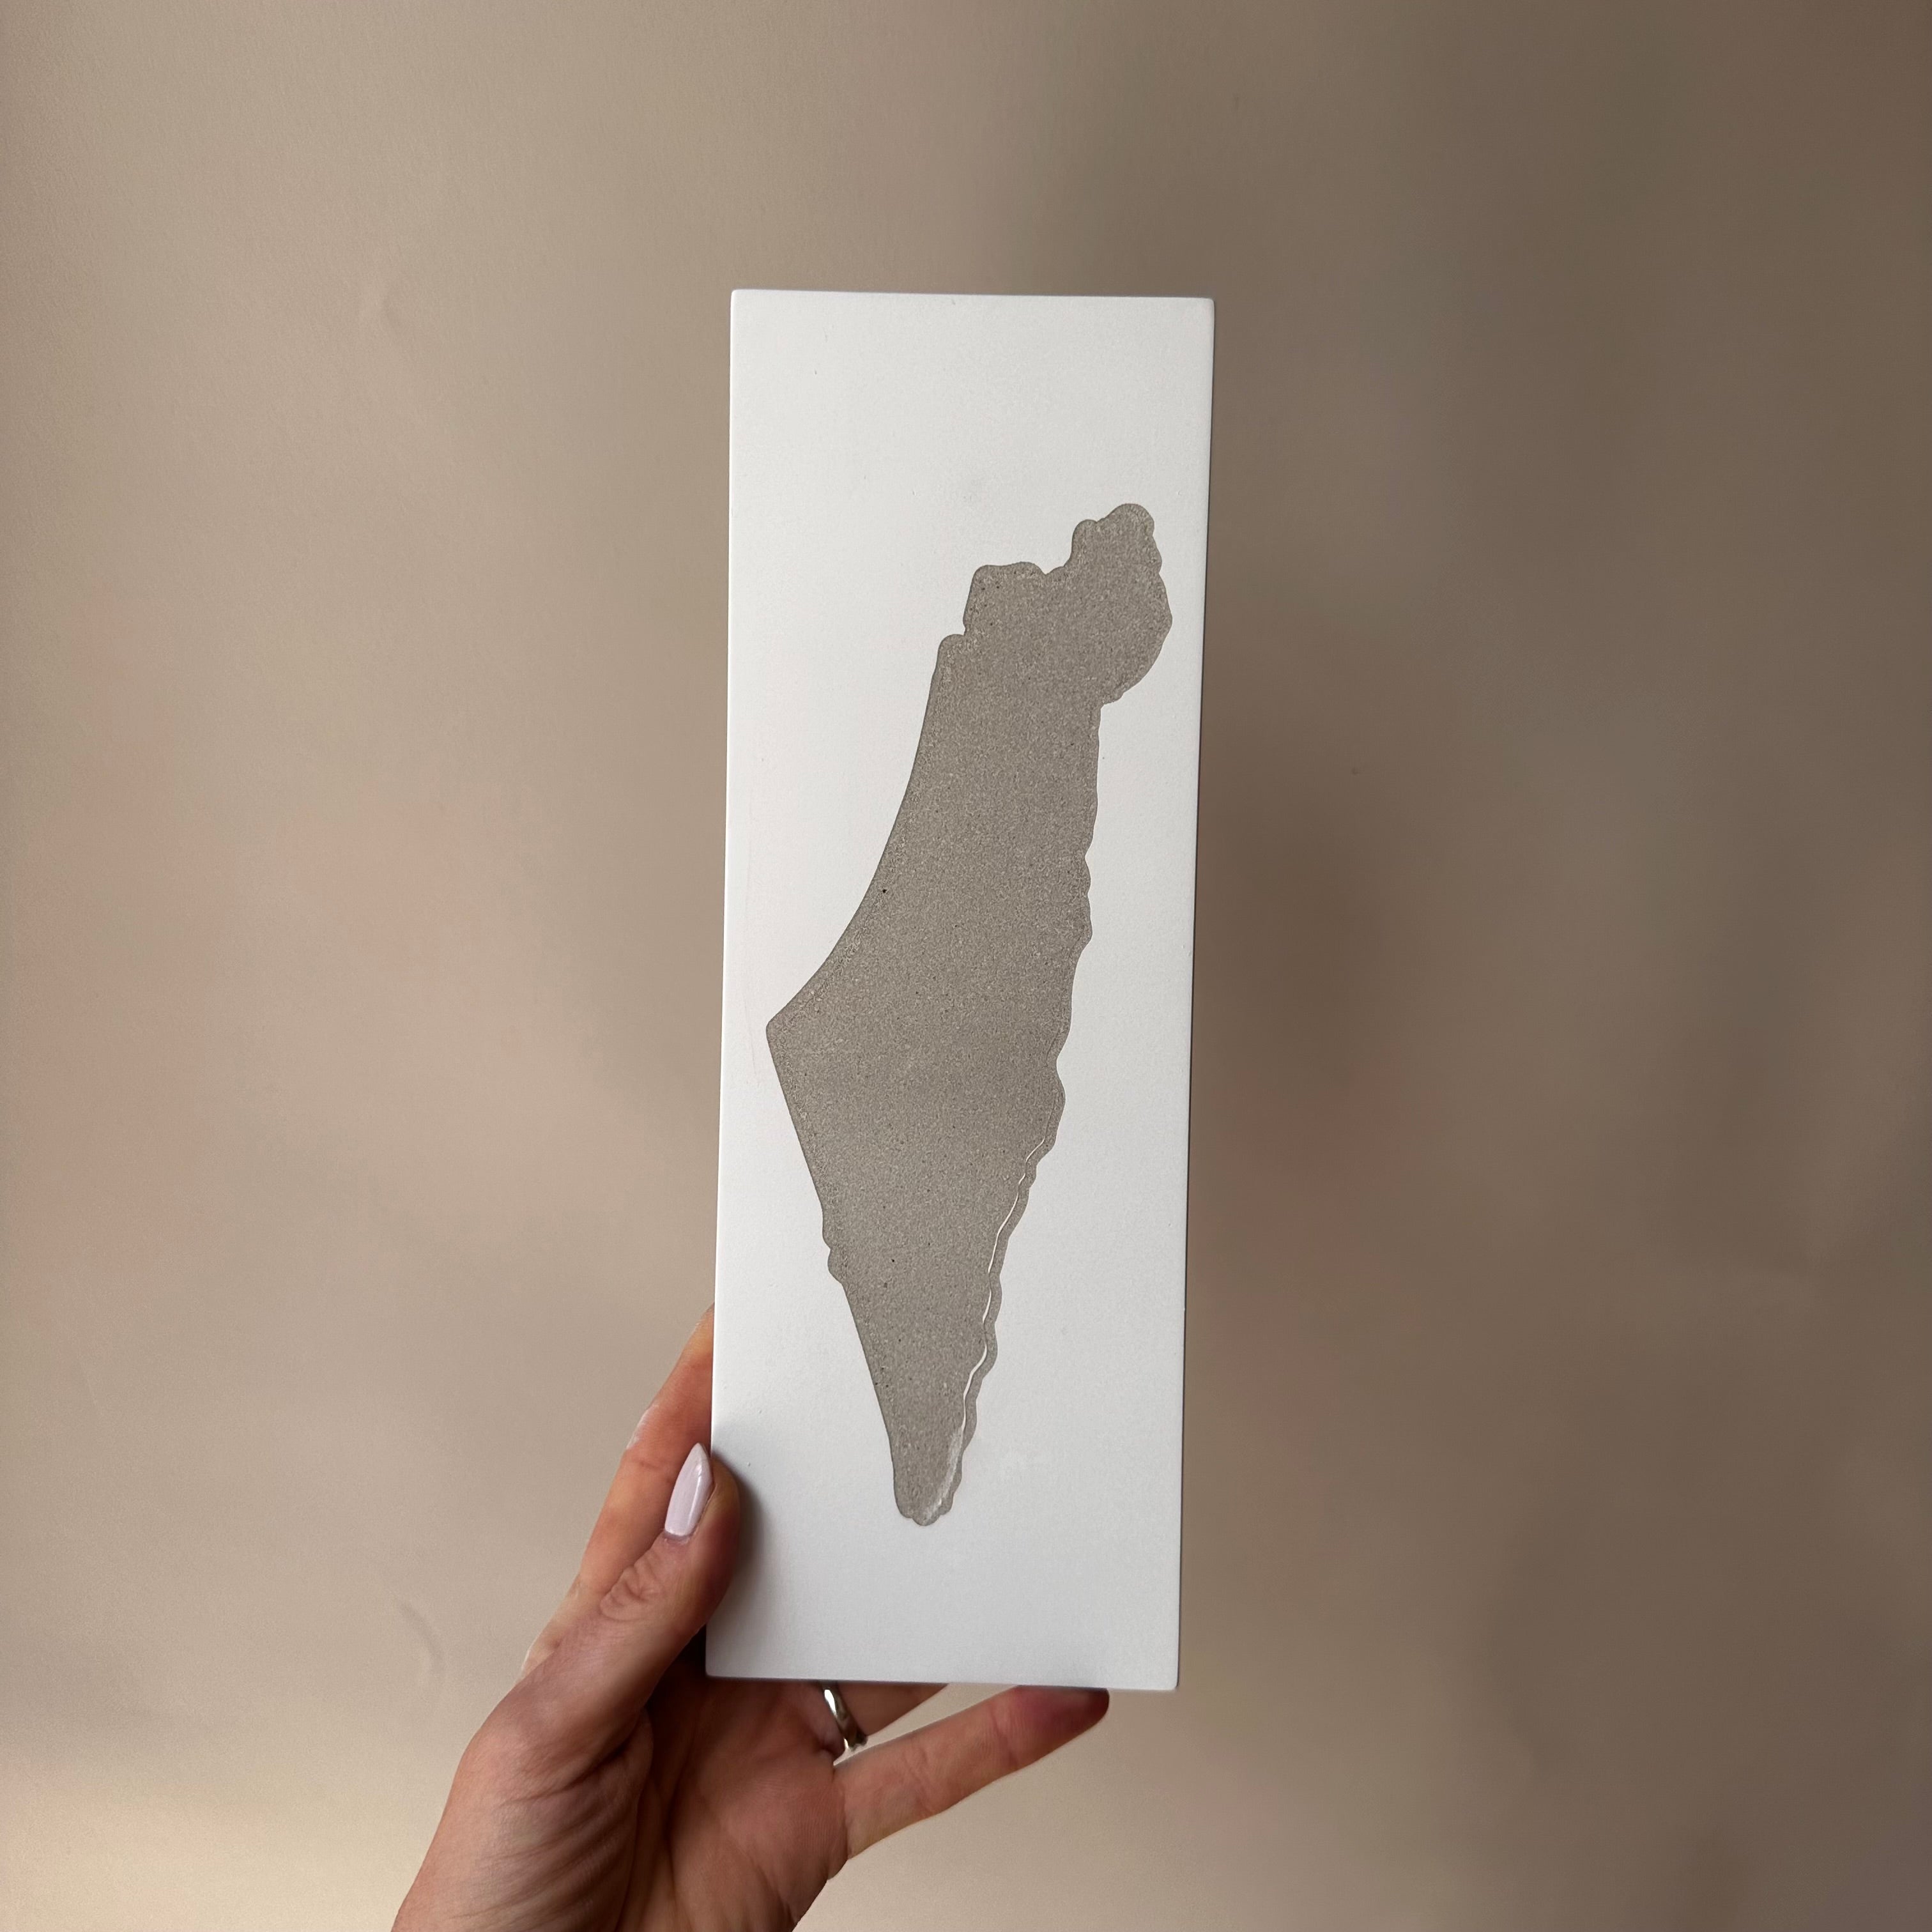 סט "מזמור תודה" + מפת ארץ ישראל-לבן